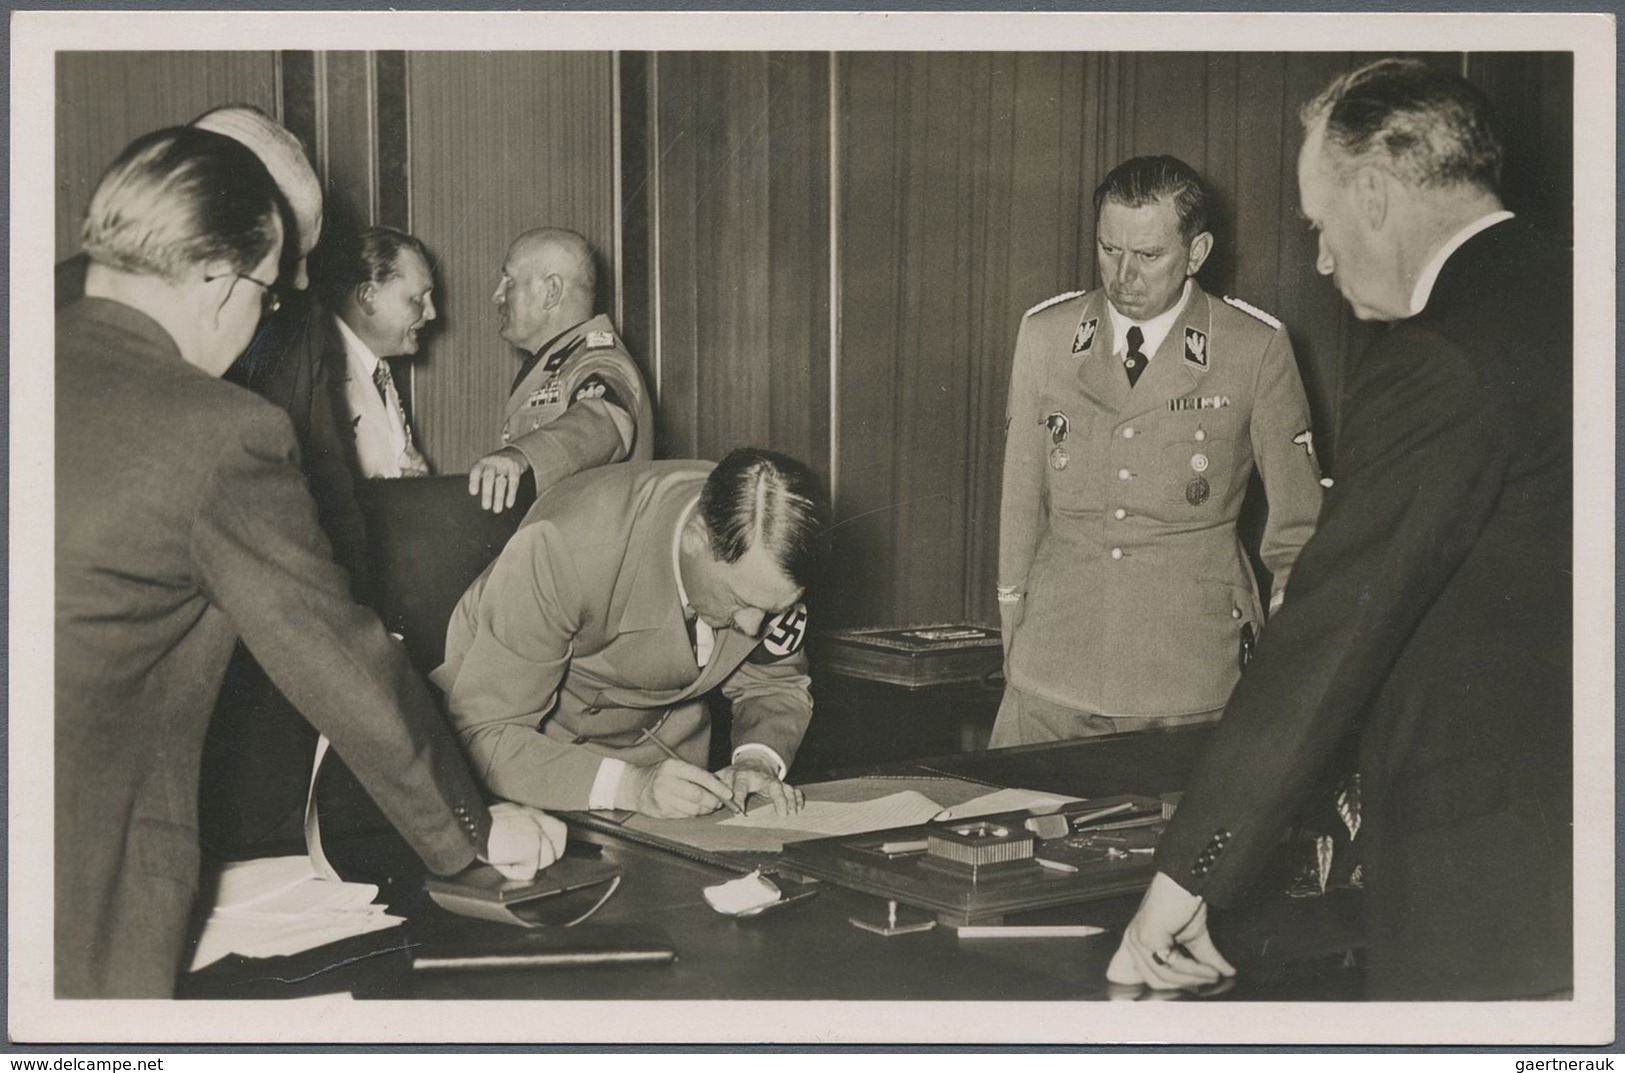 Ansichtskarten: Propaganda: 1938, "Hitler Unterschreibt Abkommen Von München", Im Hintergrund Offizi - Parteien & Wahlen